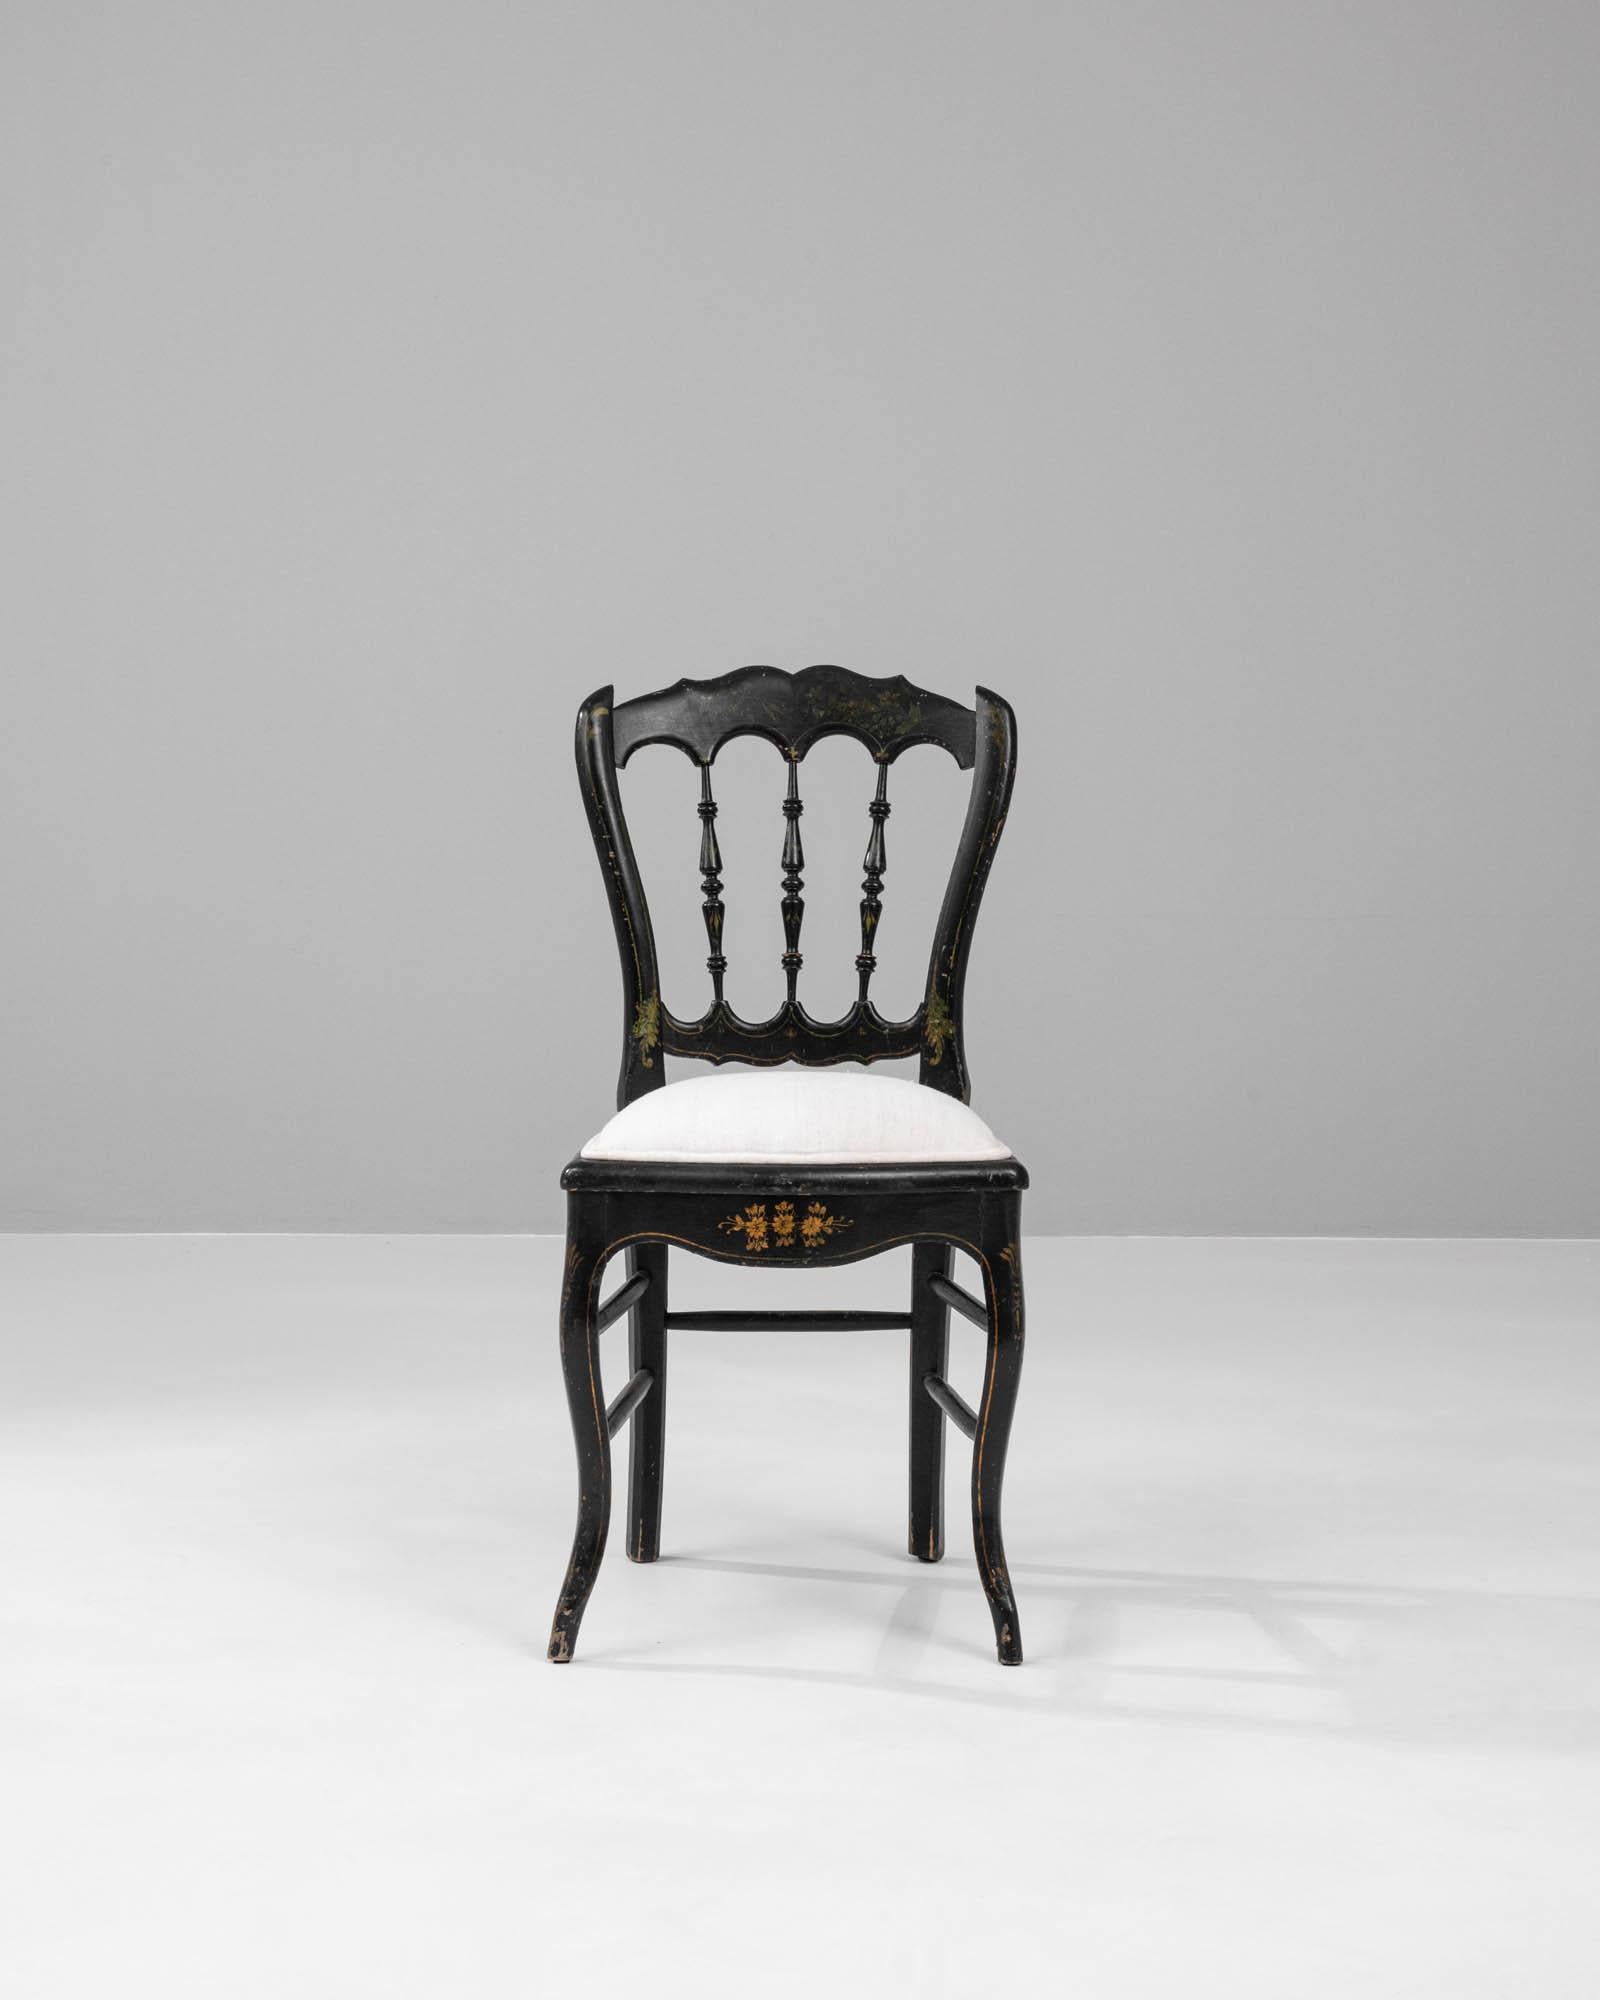 Dieser französische Holzstuhl mit gepolsterter Sitzfläche aus den 1880er Jahren ist ein schönes Beispiel für das opulente Design des späten 19. Jahrhunderts. Das ebenholzfarbene Gestell des Stuhls ist mit goldenen Blumenmotiven verziert, deren